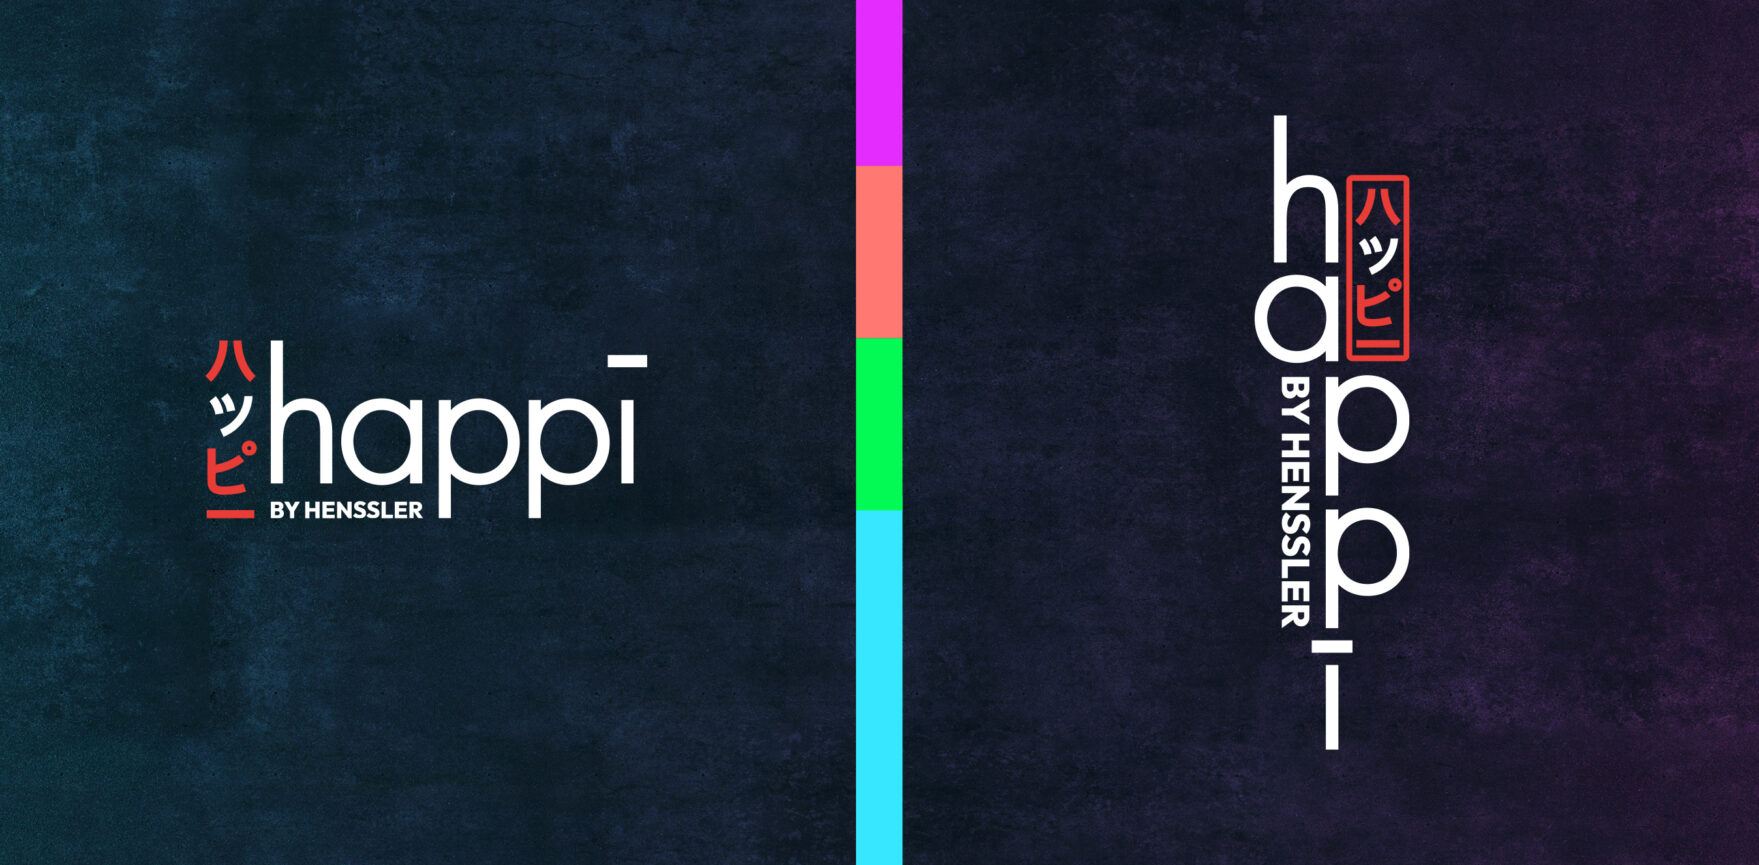 happi by Henssler Corporate Design Logos